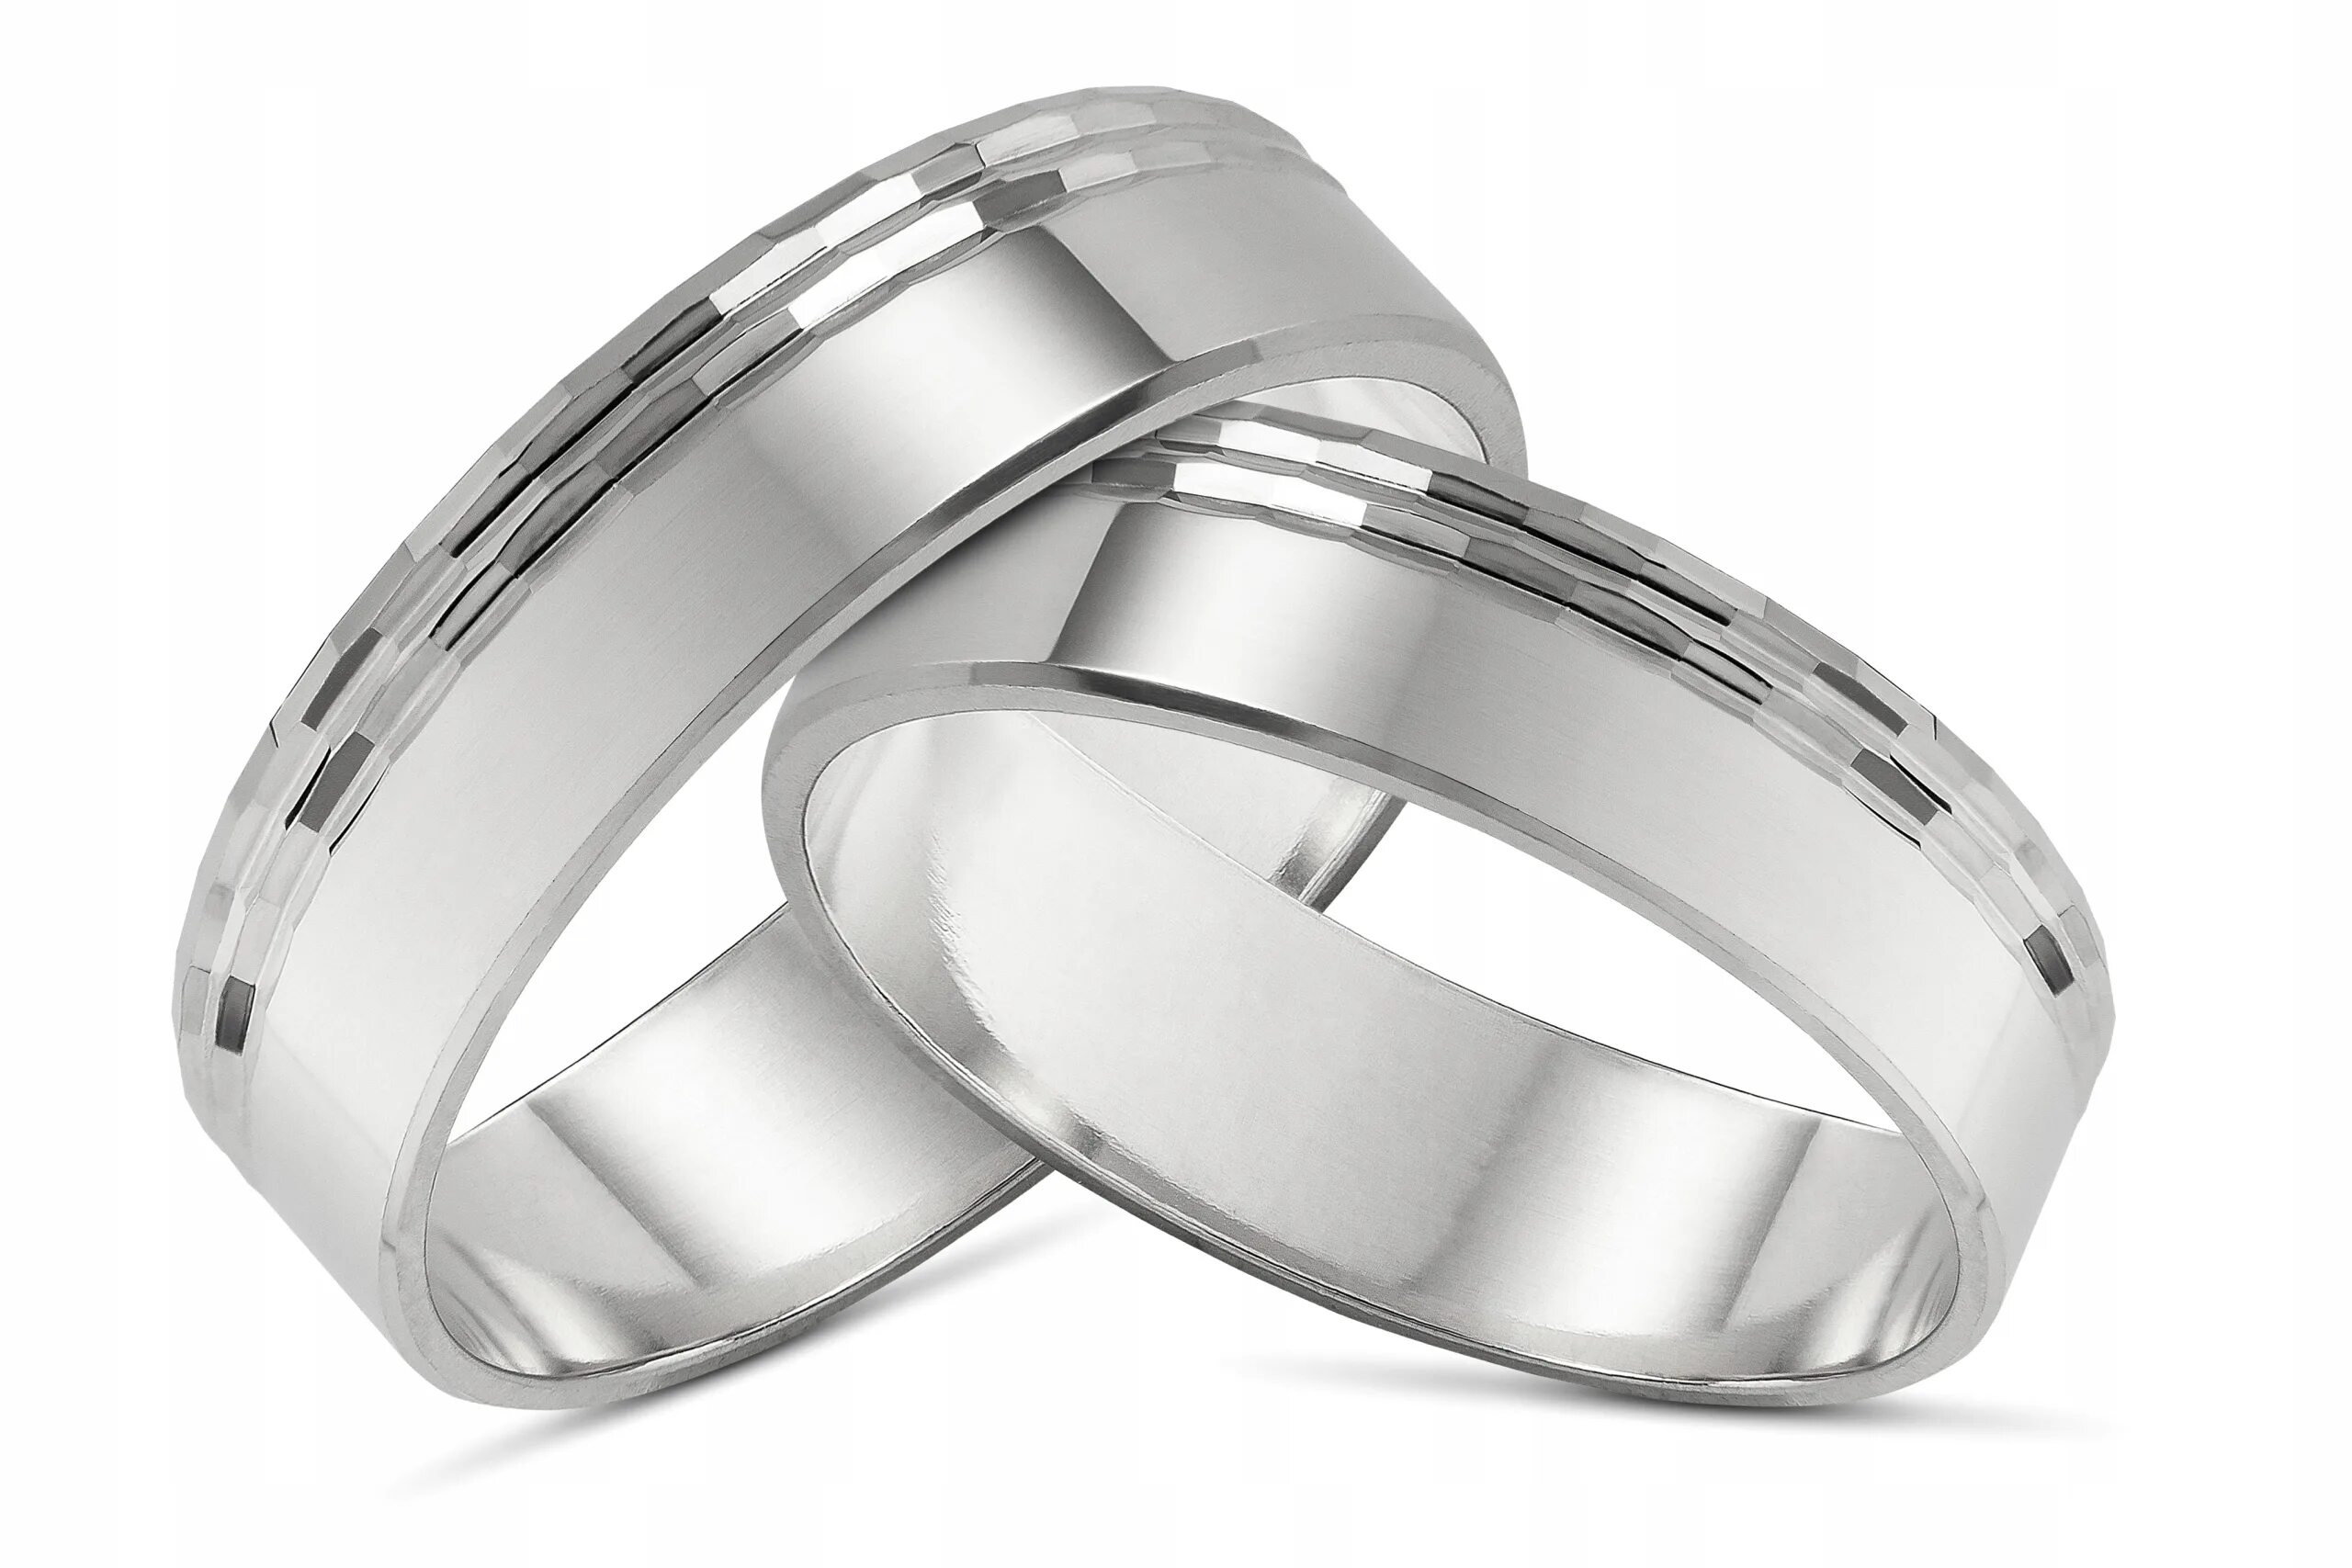 Можно ли серебряное обручальное кольцо. Кольца мужские обручальные серебро 925. Серебряное обручальное кольцо. Серебряное обручальное кольцо мужское. Обручальное кольцо мужское серебро.